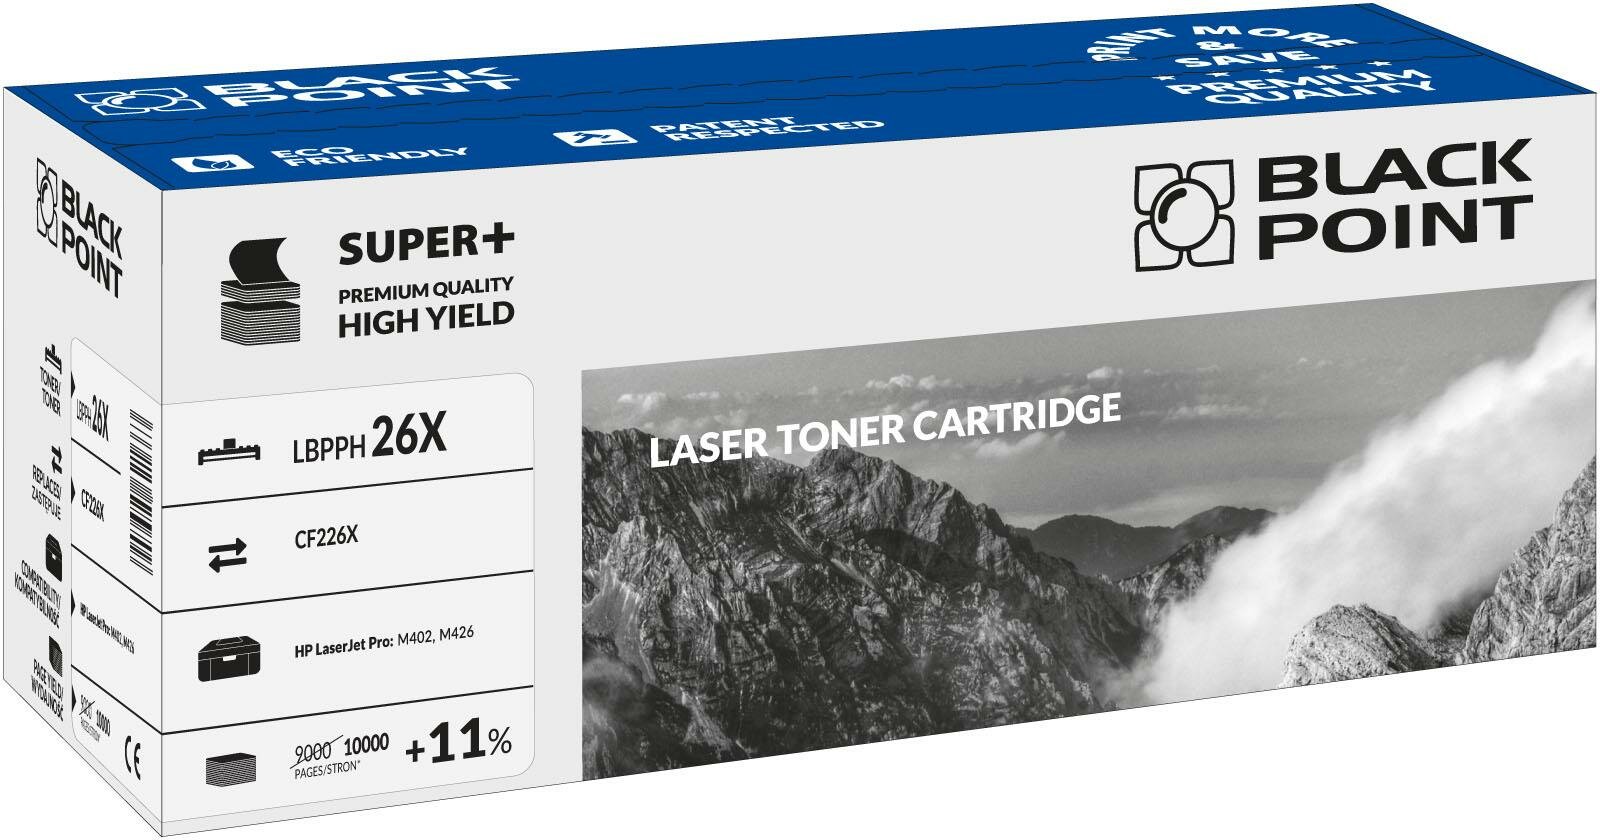 Toner laserowy Black Point Super Plus LBPPH26X widok pod kątem na opakowanie